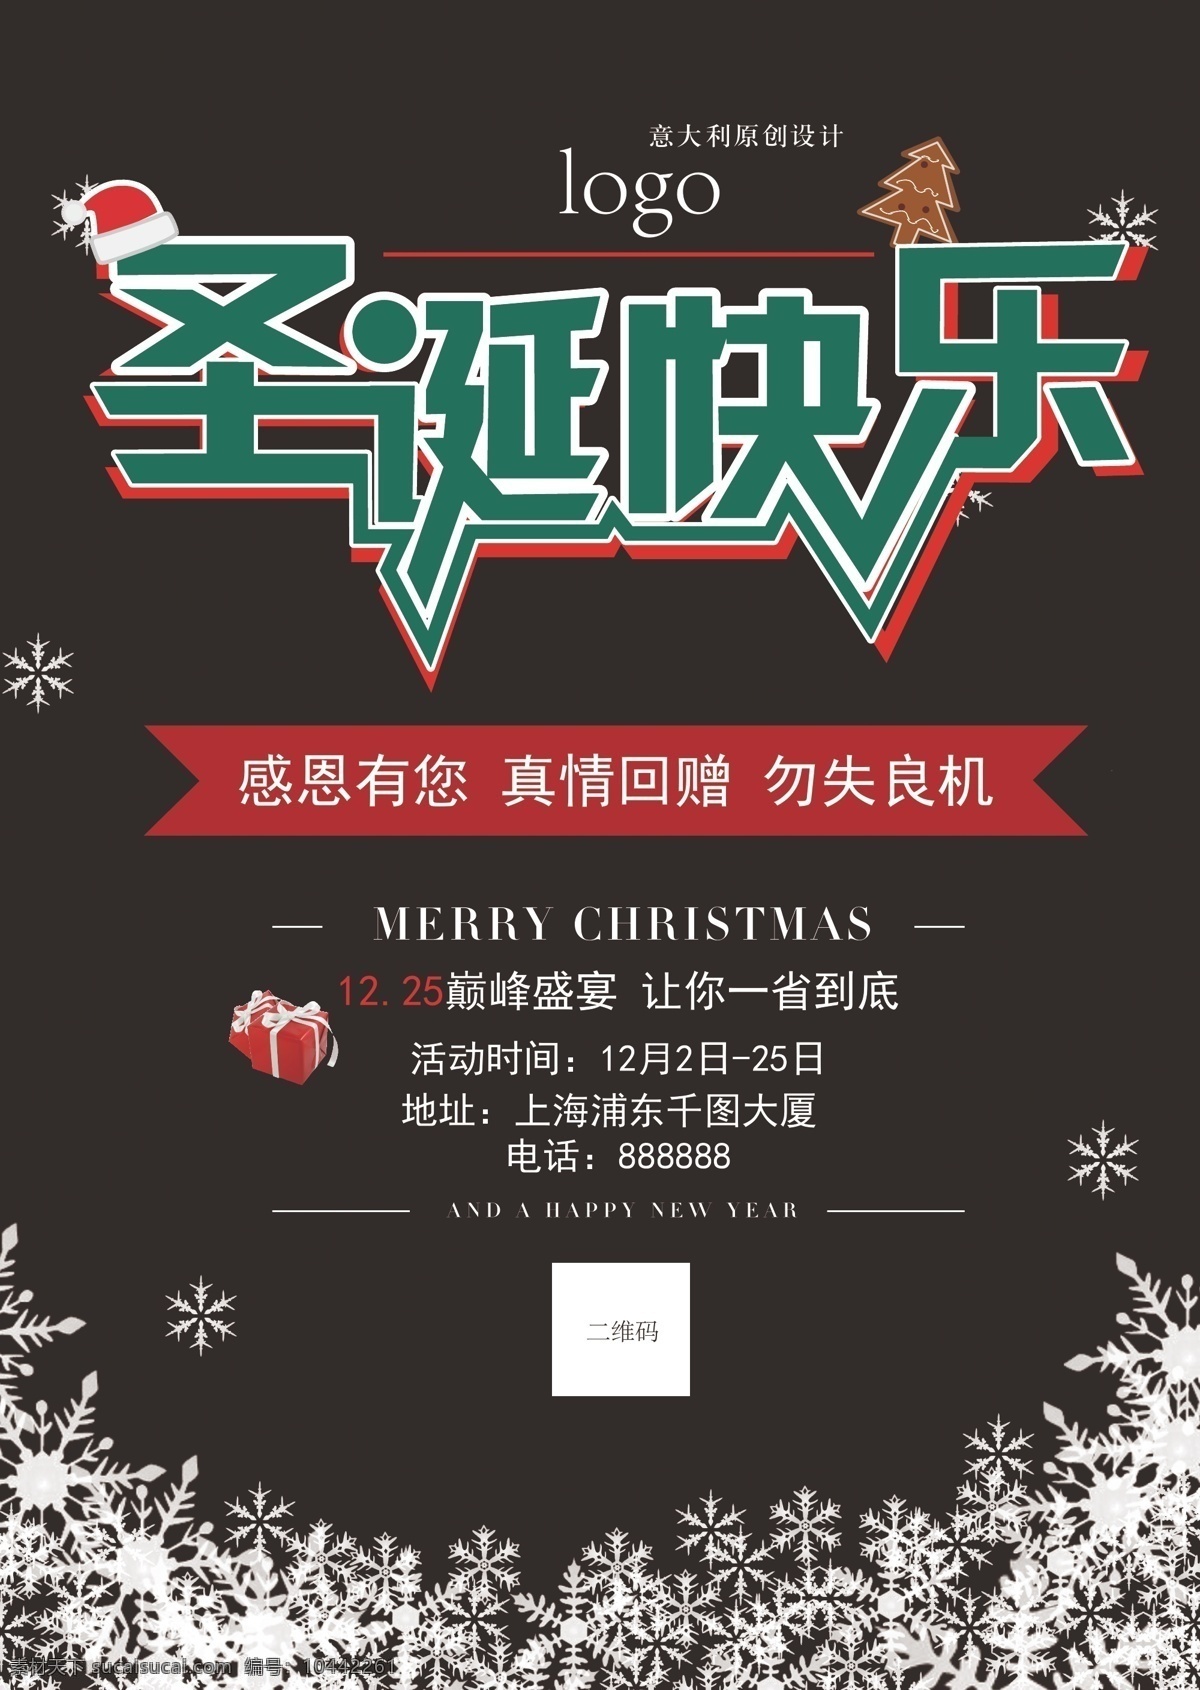 圣诞 简约 简洁 海报 展板 黑色 卡通 可爱雪花元素 圣诞节 圣诞帽元素 宣传印刷